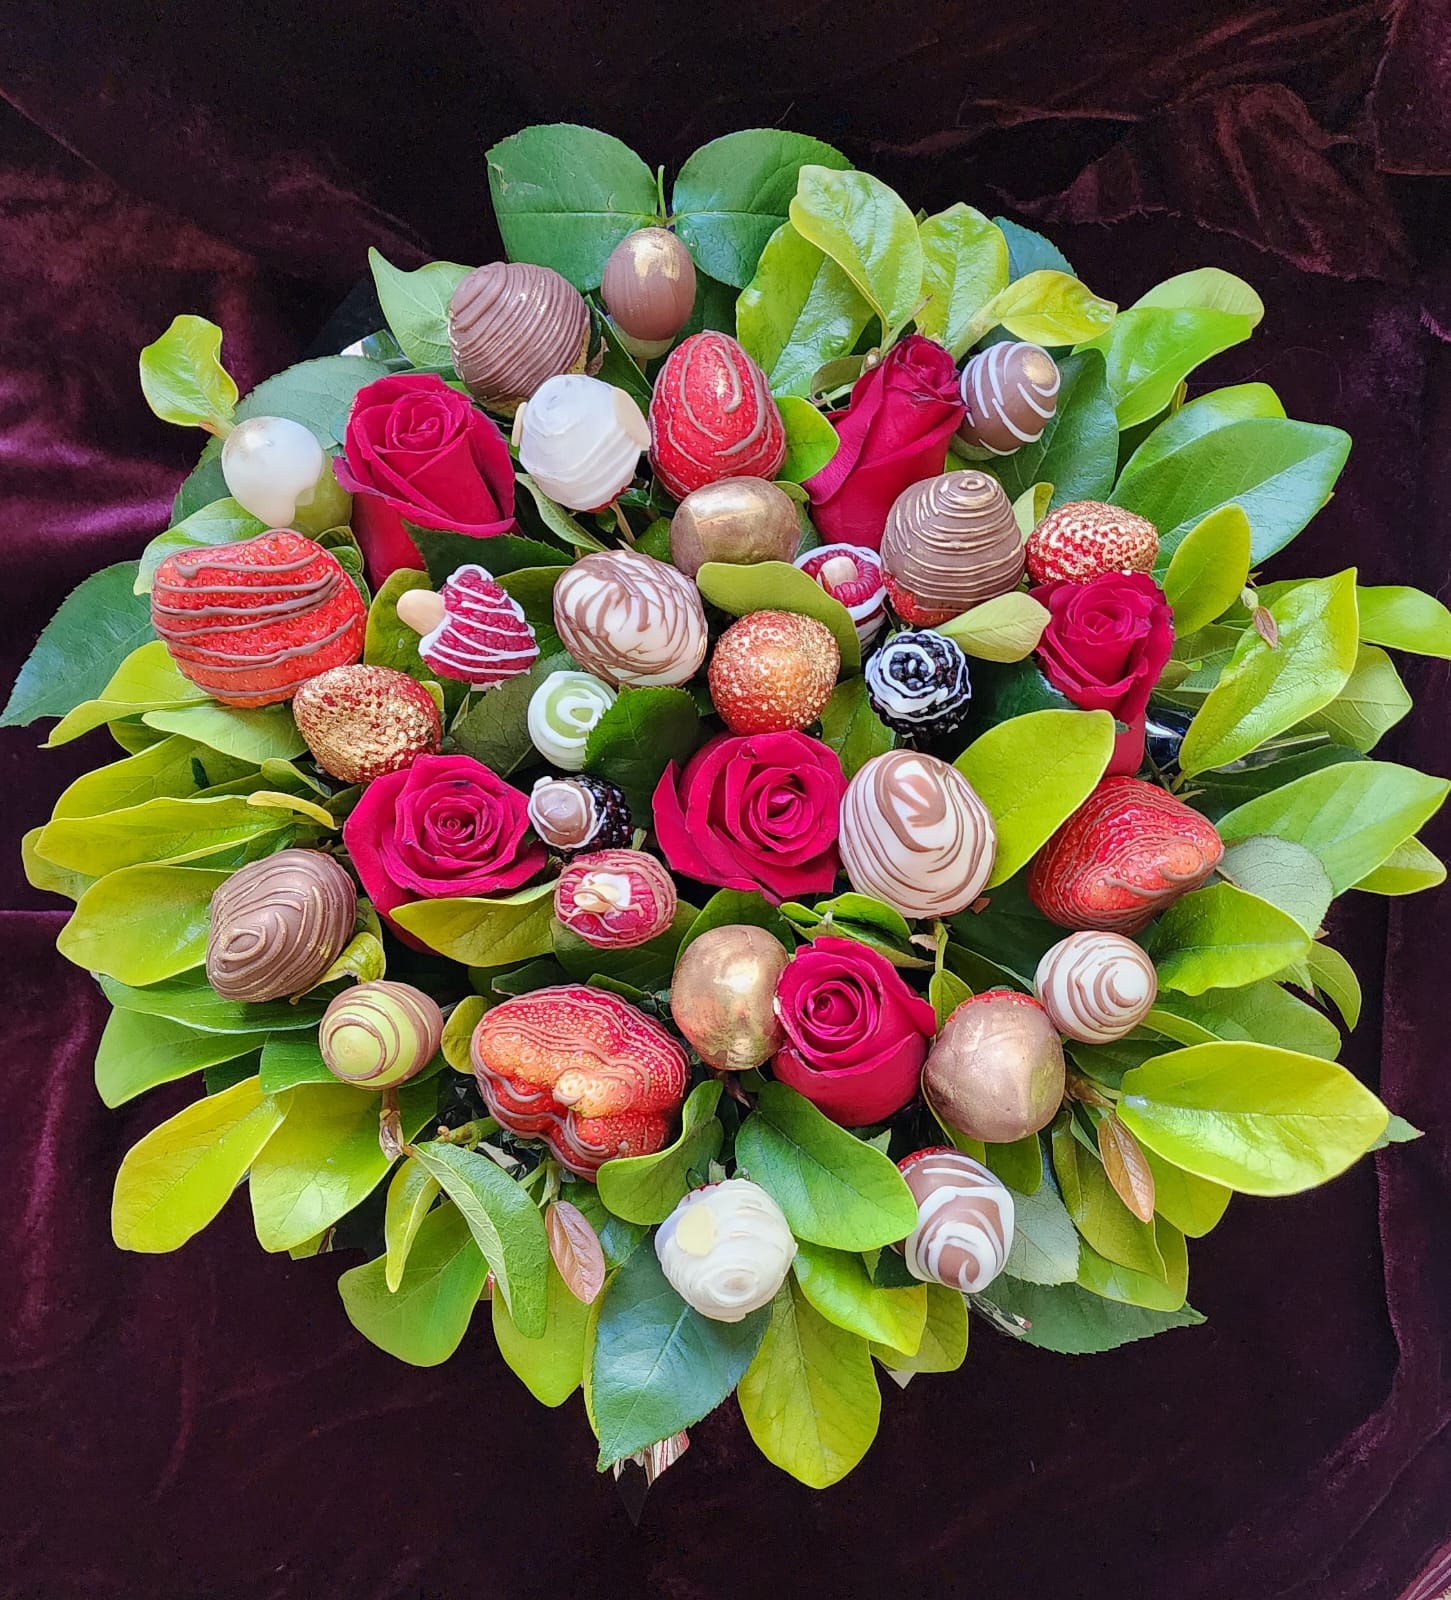 Genial combinación de rosas y fresas con chocolate